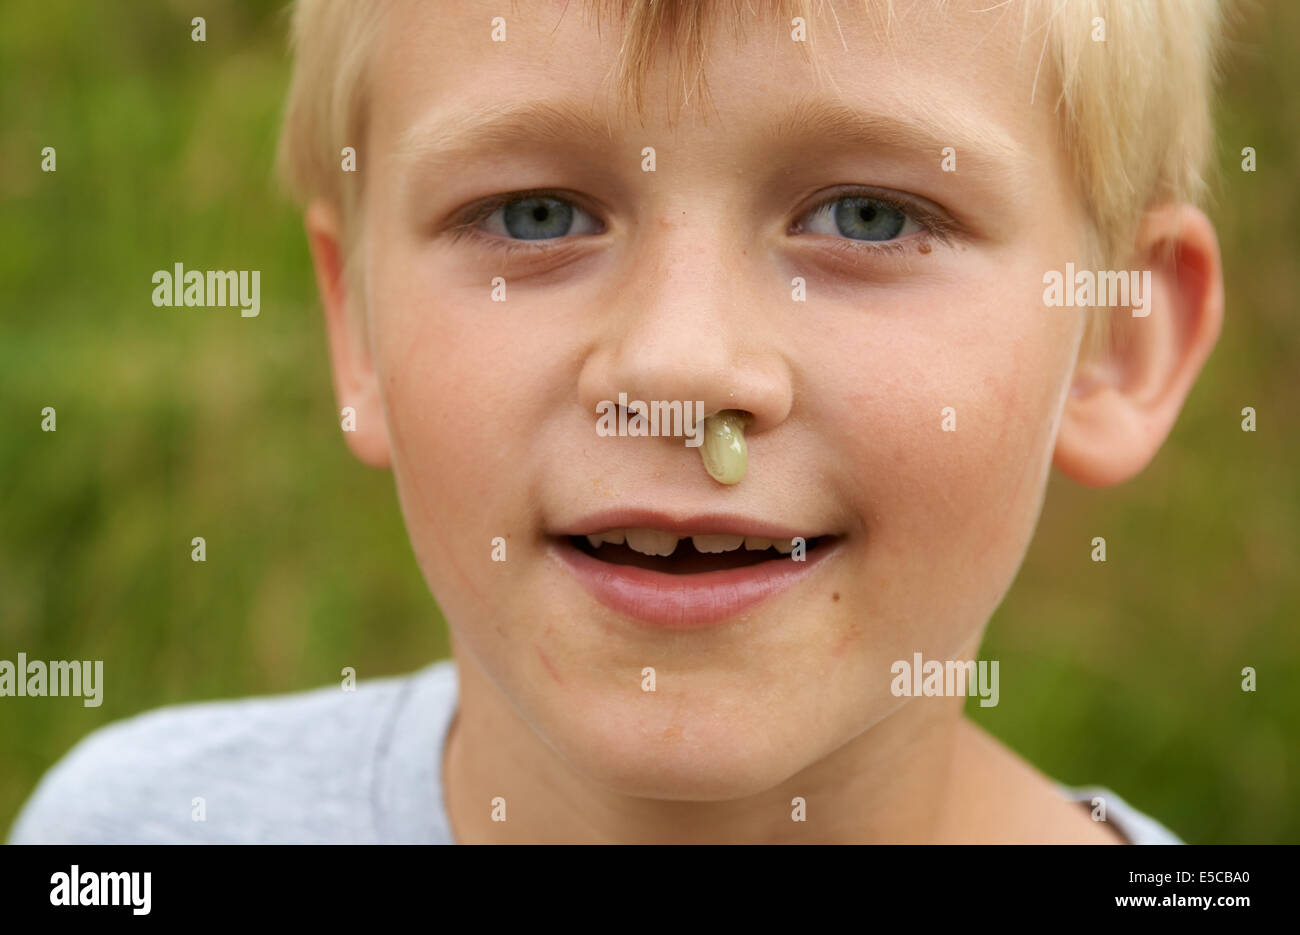 Bambino ragazzo biondo con rinite senza tessuto fluente dal naso, ritratto, colpo alla testa, viso, dettaglio Foto Stock